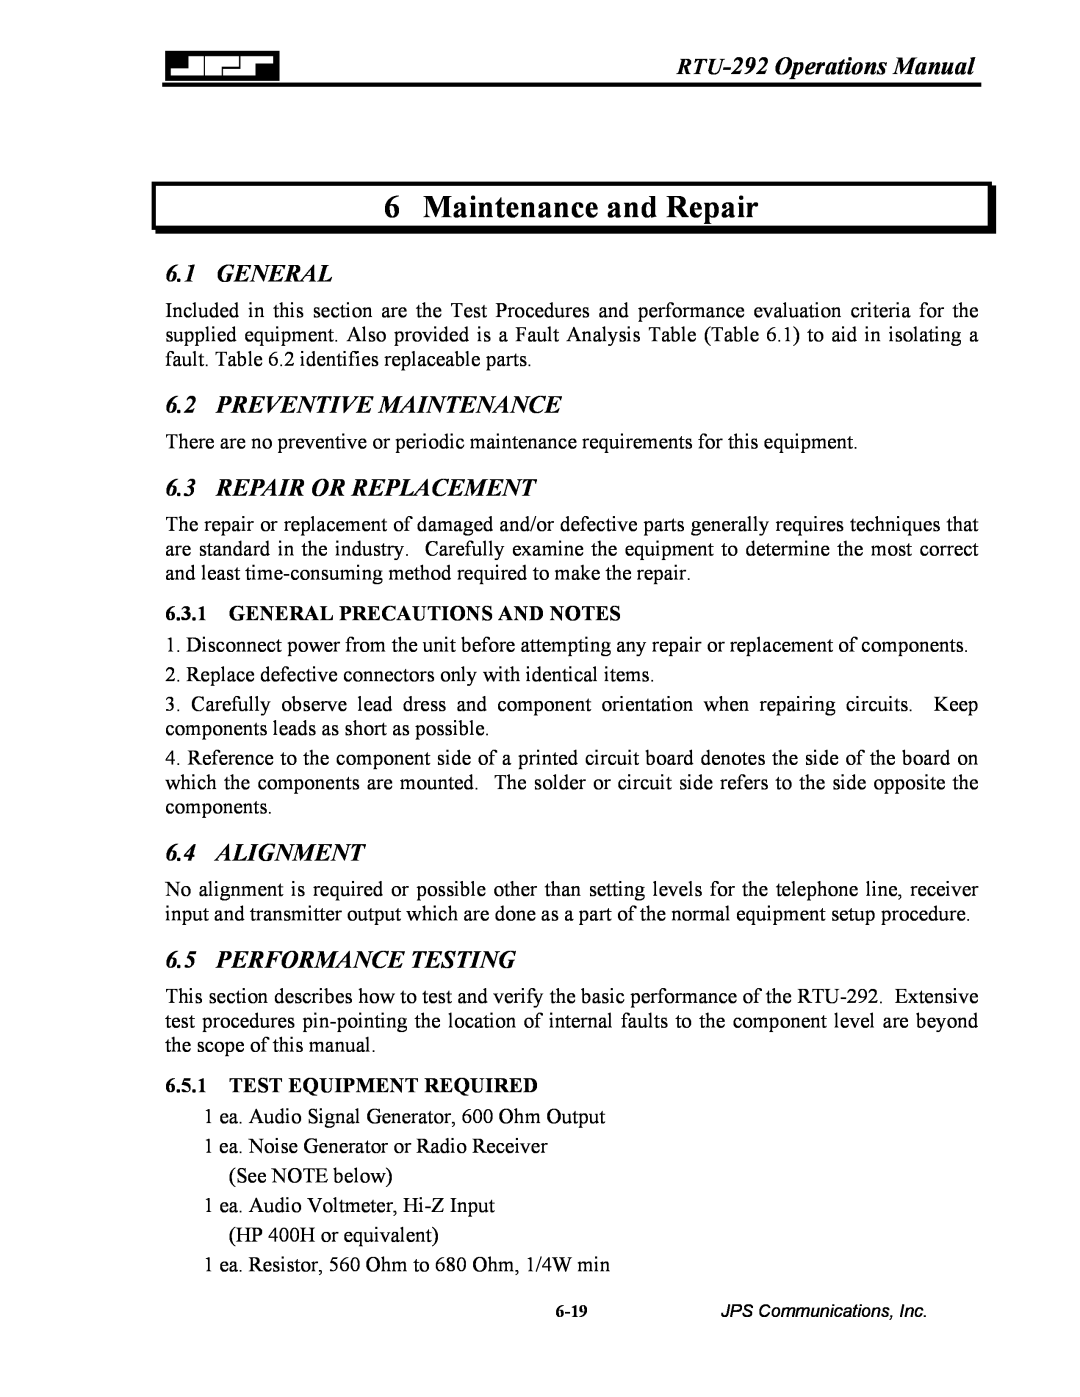 Nortel Networks RTU-292 Maintenance and Repair, General, Preventive Maintenance, Repair Or Replacement, Alignment 